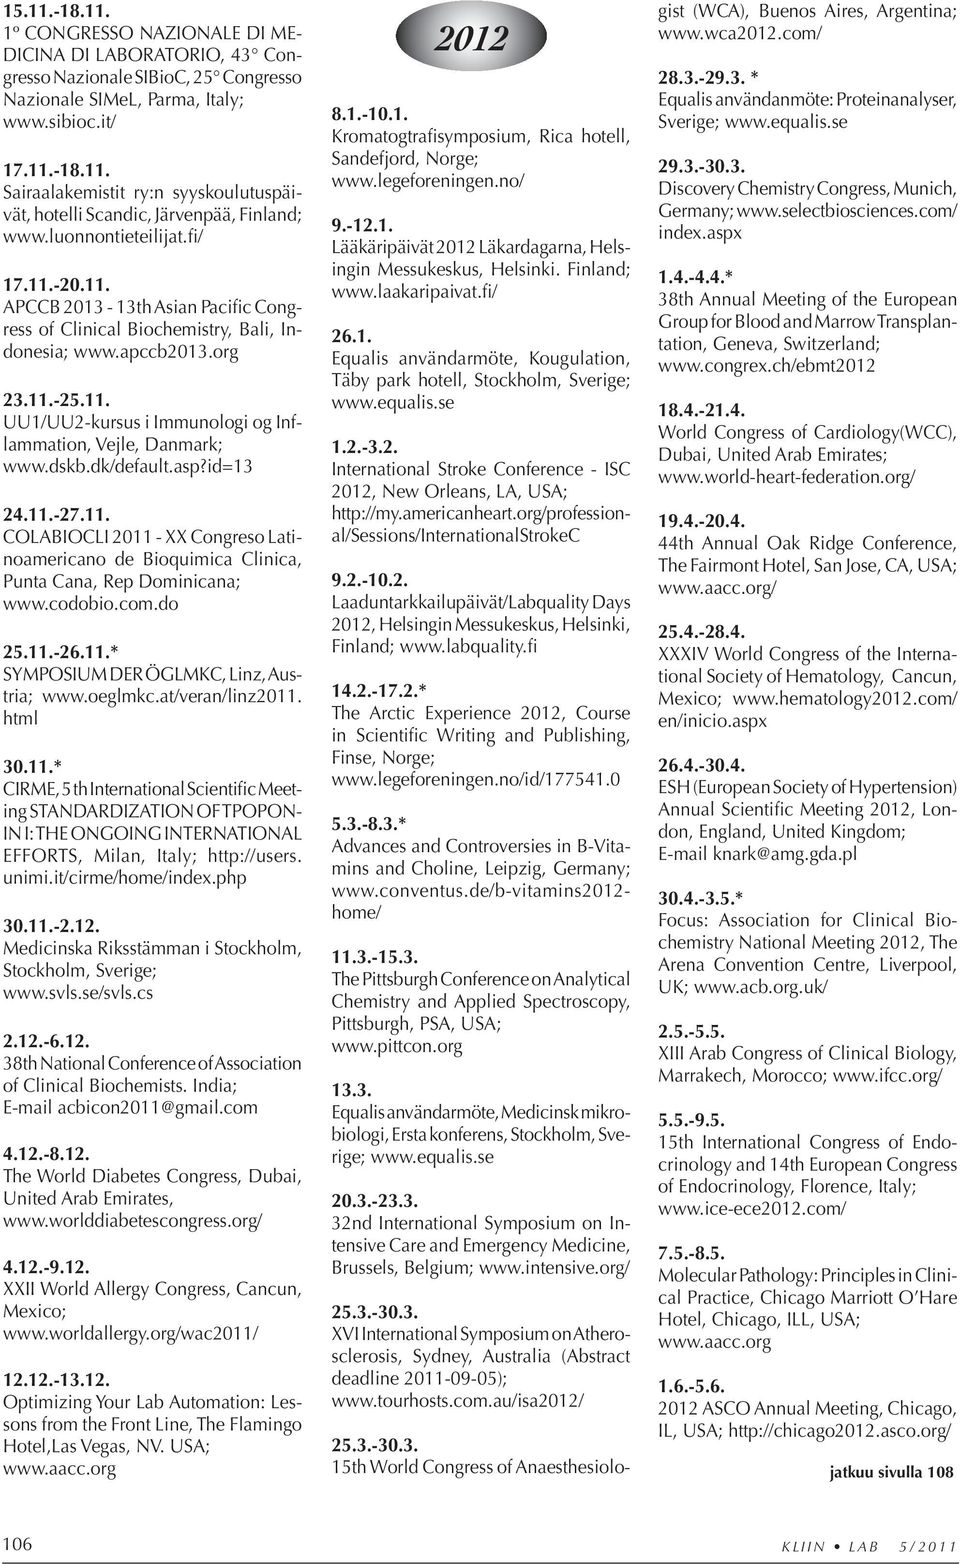 dskb.dk/default.asp?id=13 24.11.-27.11. COLABIOCLI 2011 - XX Congreso Latinoamericano de Bioquimica Clinica, Punta Cana, Rep Dominicana; www.codobio.com.do 25.11.-26.11.* SYMPOSIUM DER ÖGLMKC, Linz, Austria; www.